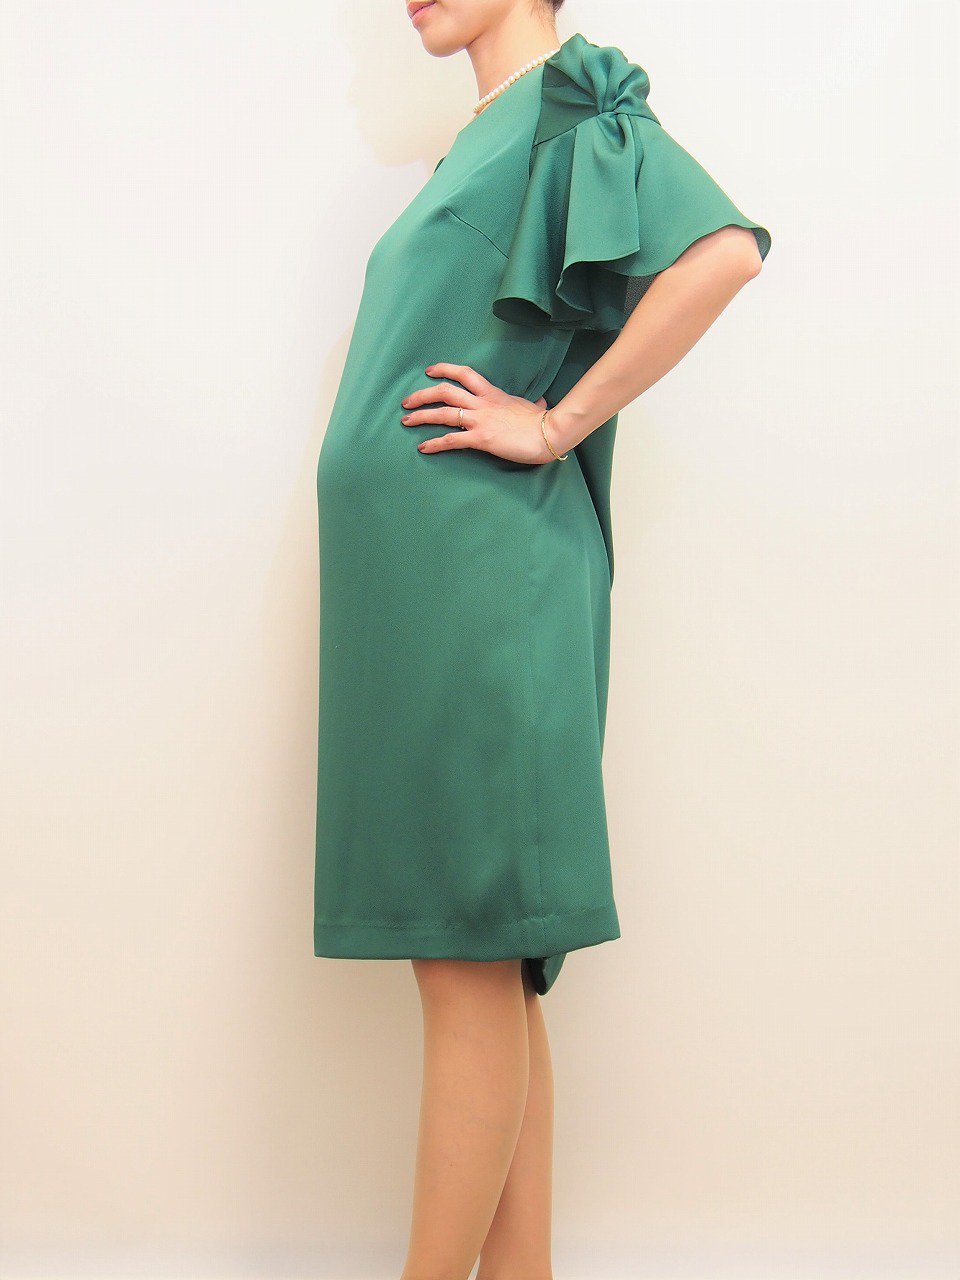 マタニティ用レンタルドレス,妊娠7ヶ月,フリル,グリーン,横